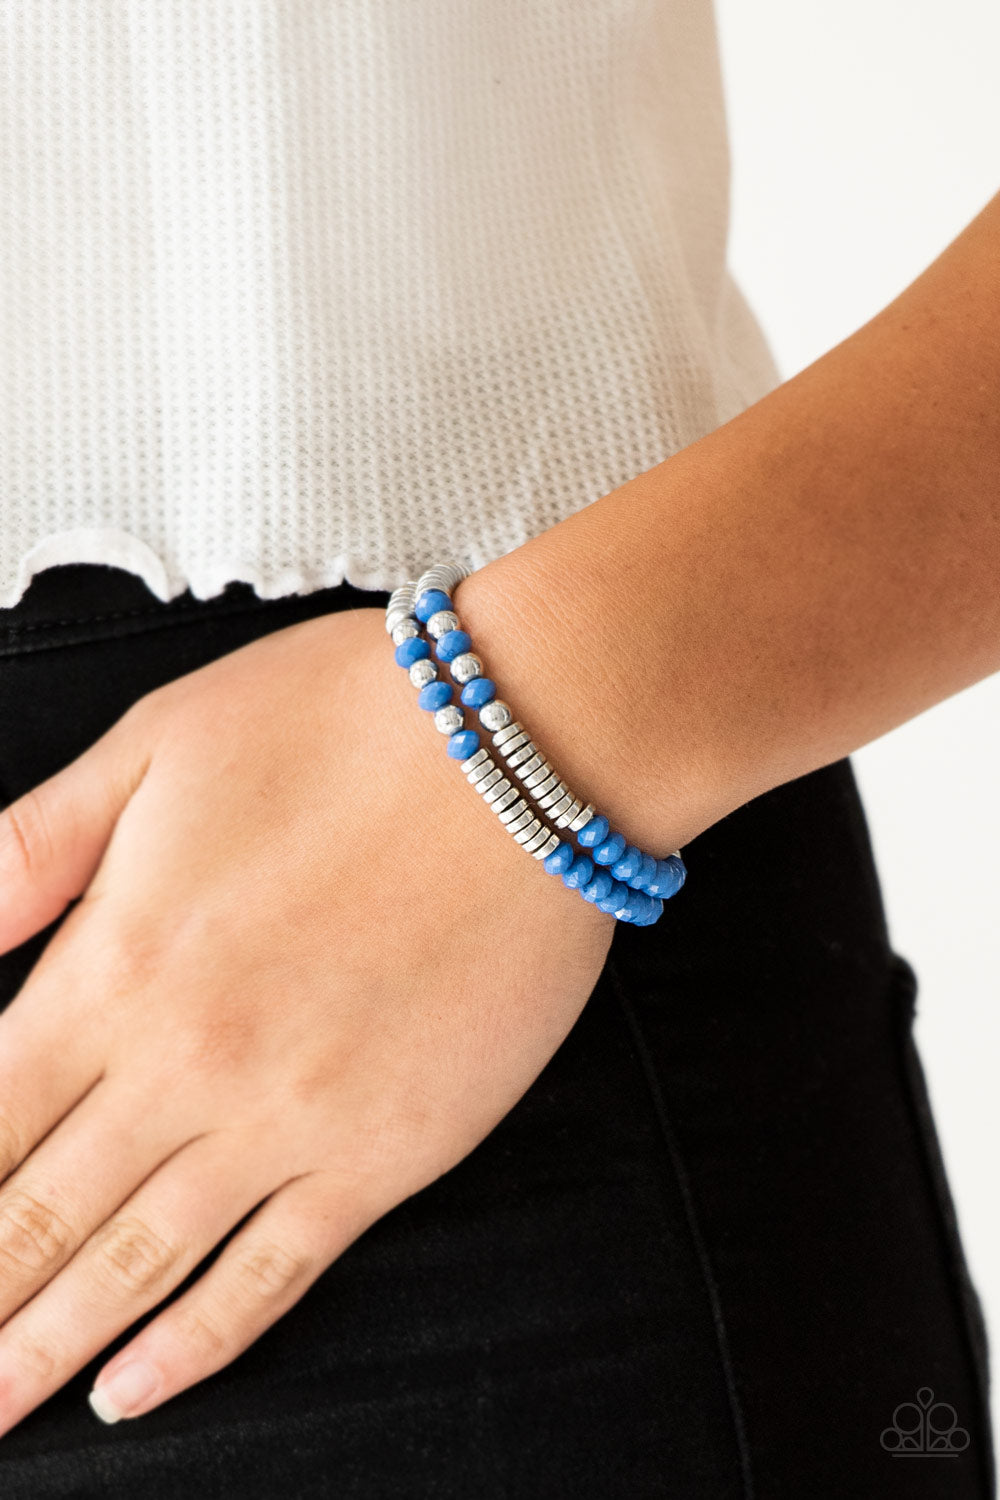 Paparazzi Downright Dressy - Blue Beads - Set of 2 Stretchy Band Bracelets - $5 Jewelry With Ashley Swint